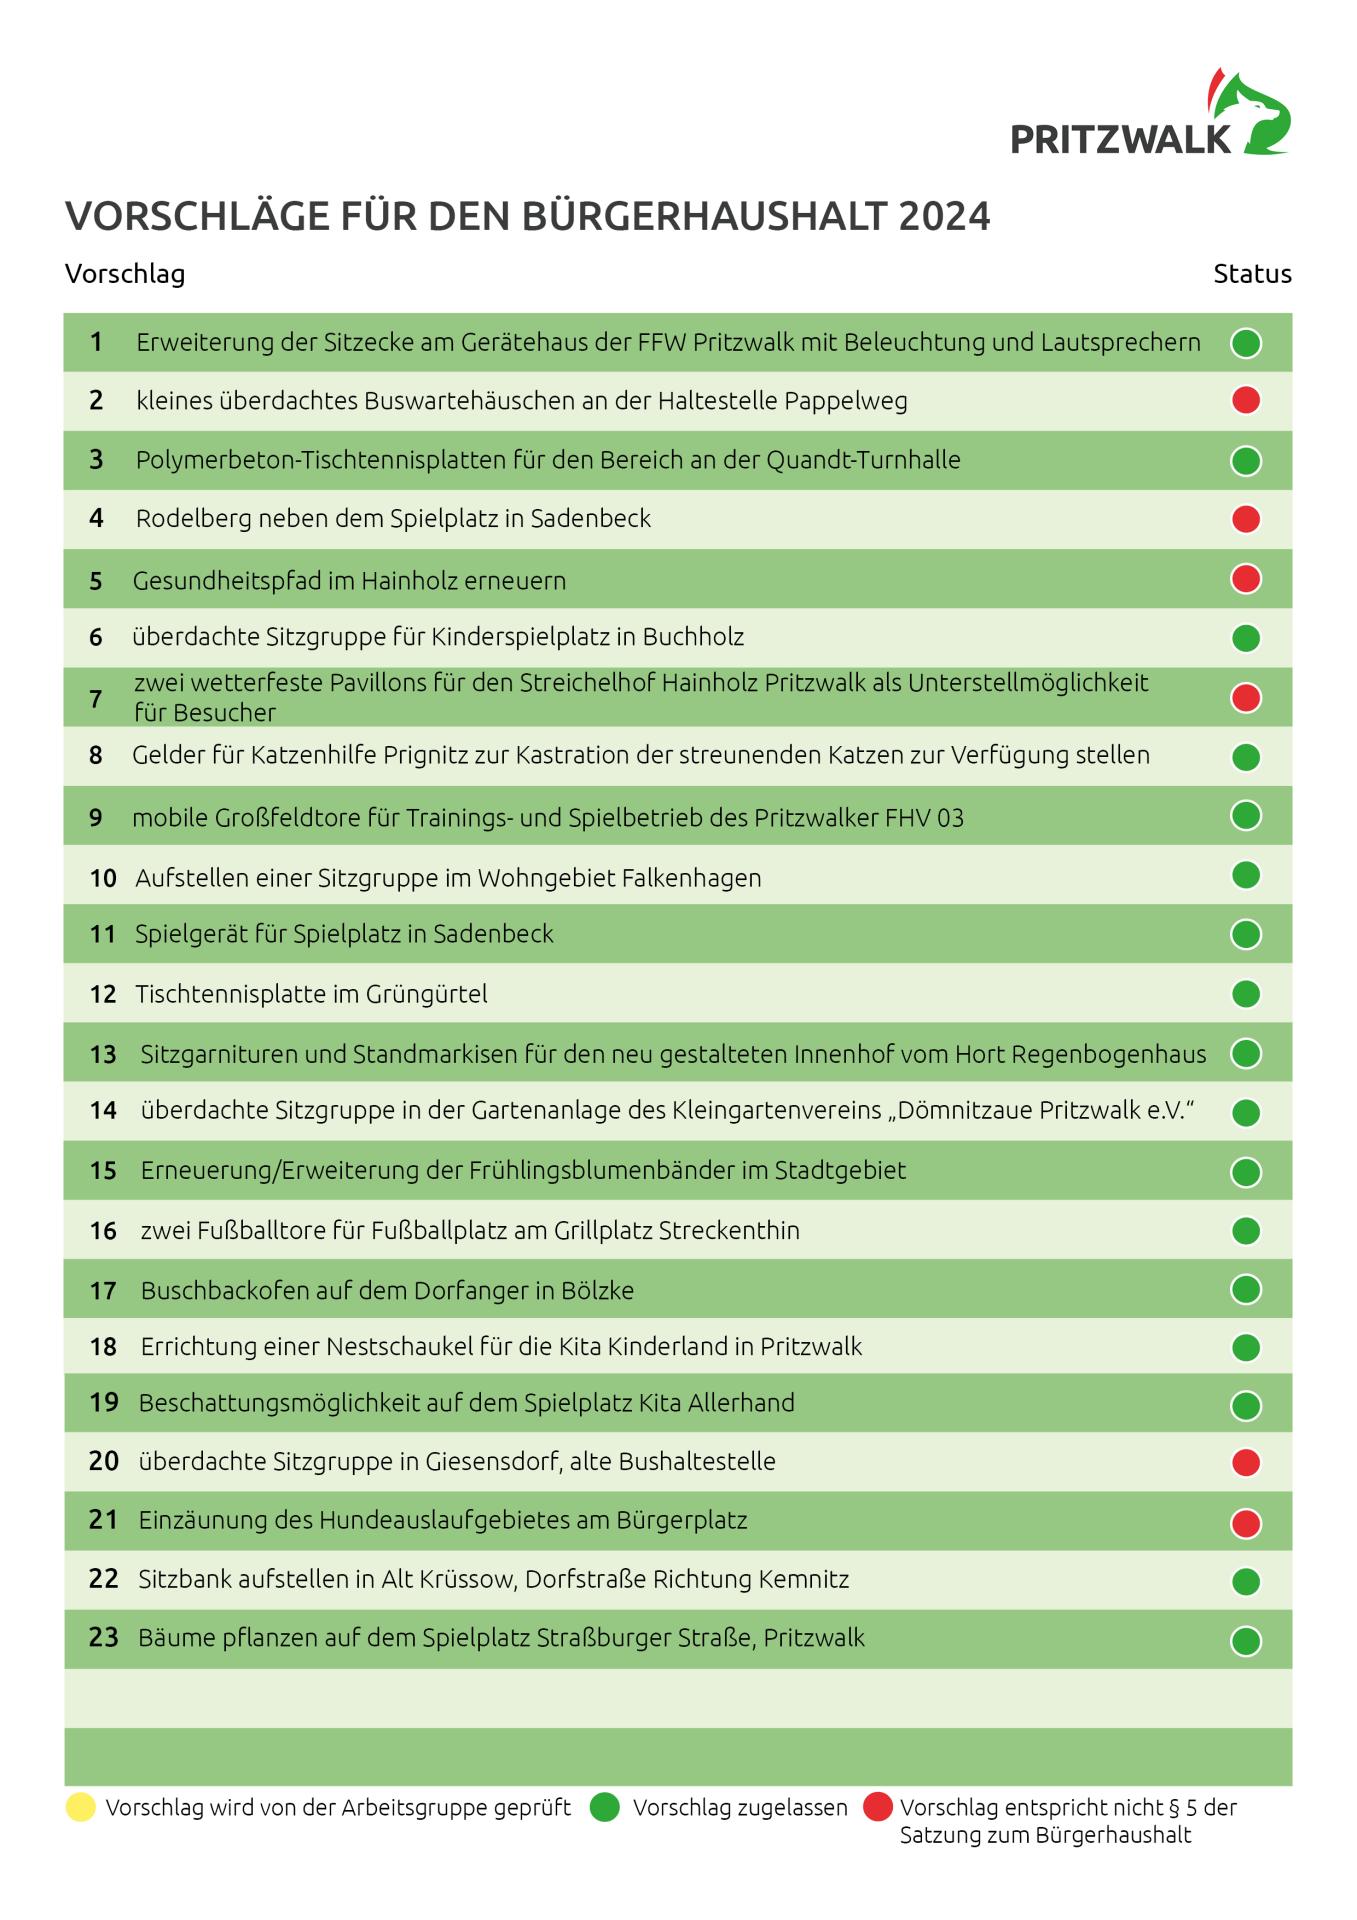 Liste der zugelassenen Vorschläge für den Bürgerhaushalt 2024